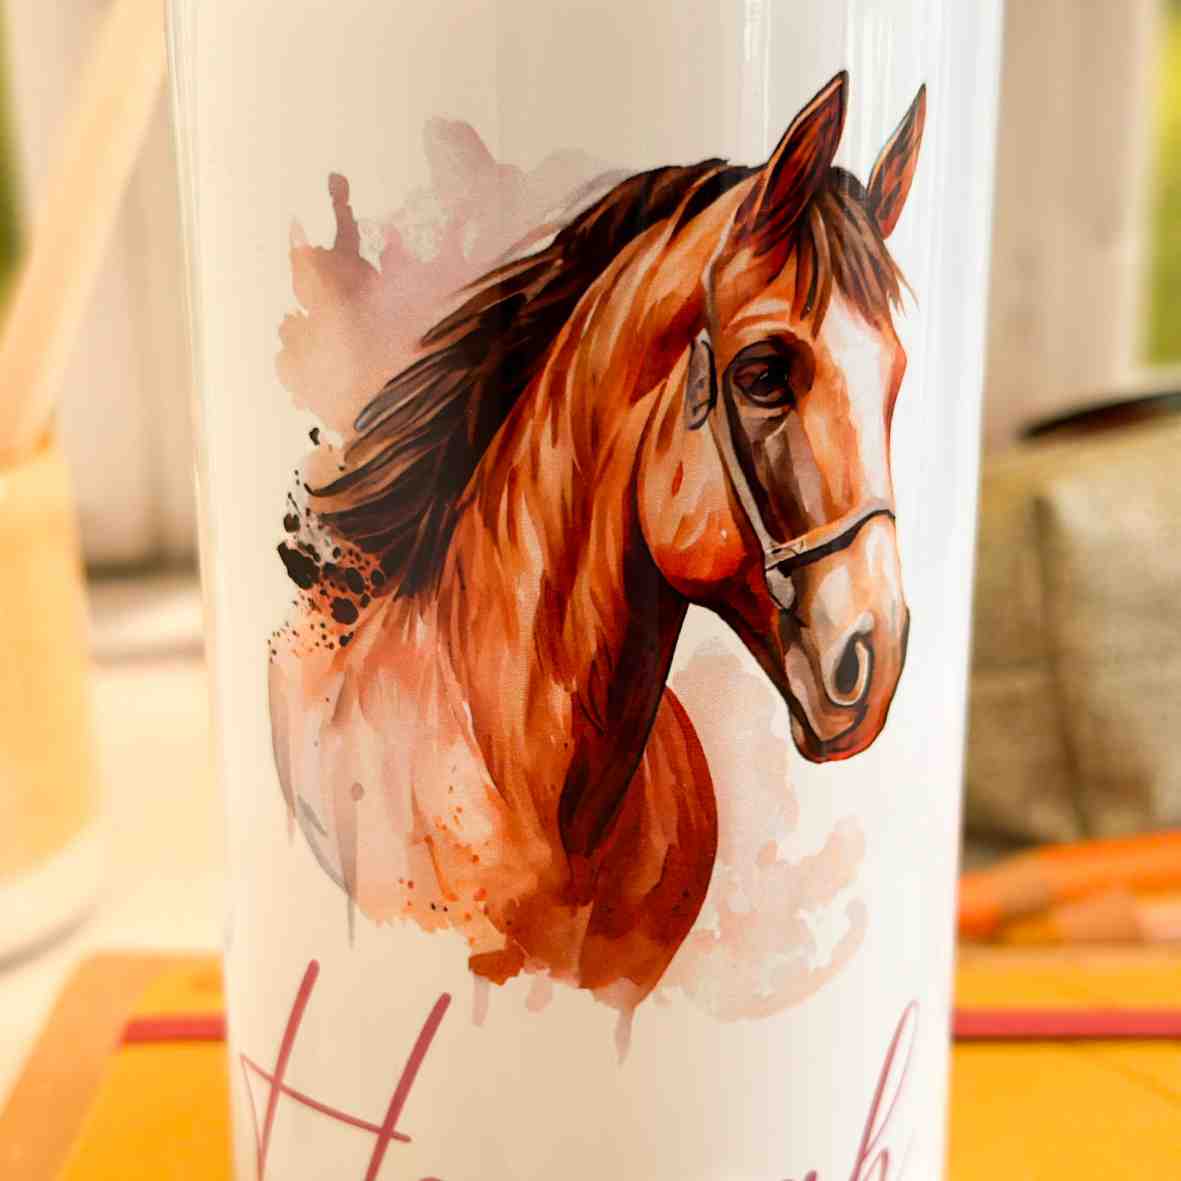 Edelstahl-Trinkflasche Pferd Villa-Schwein 